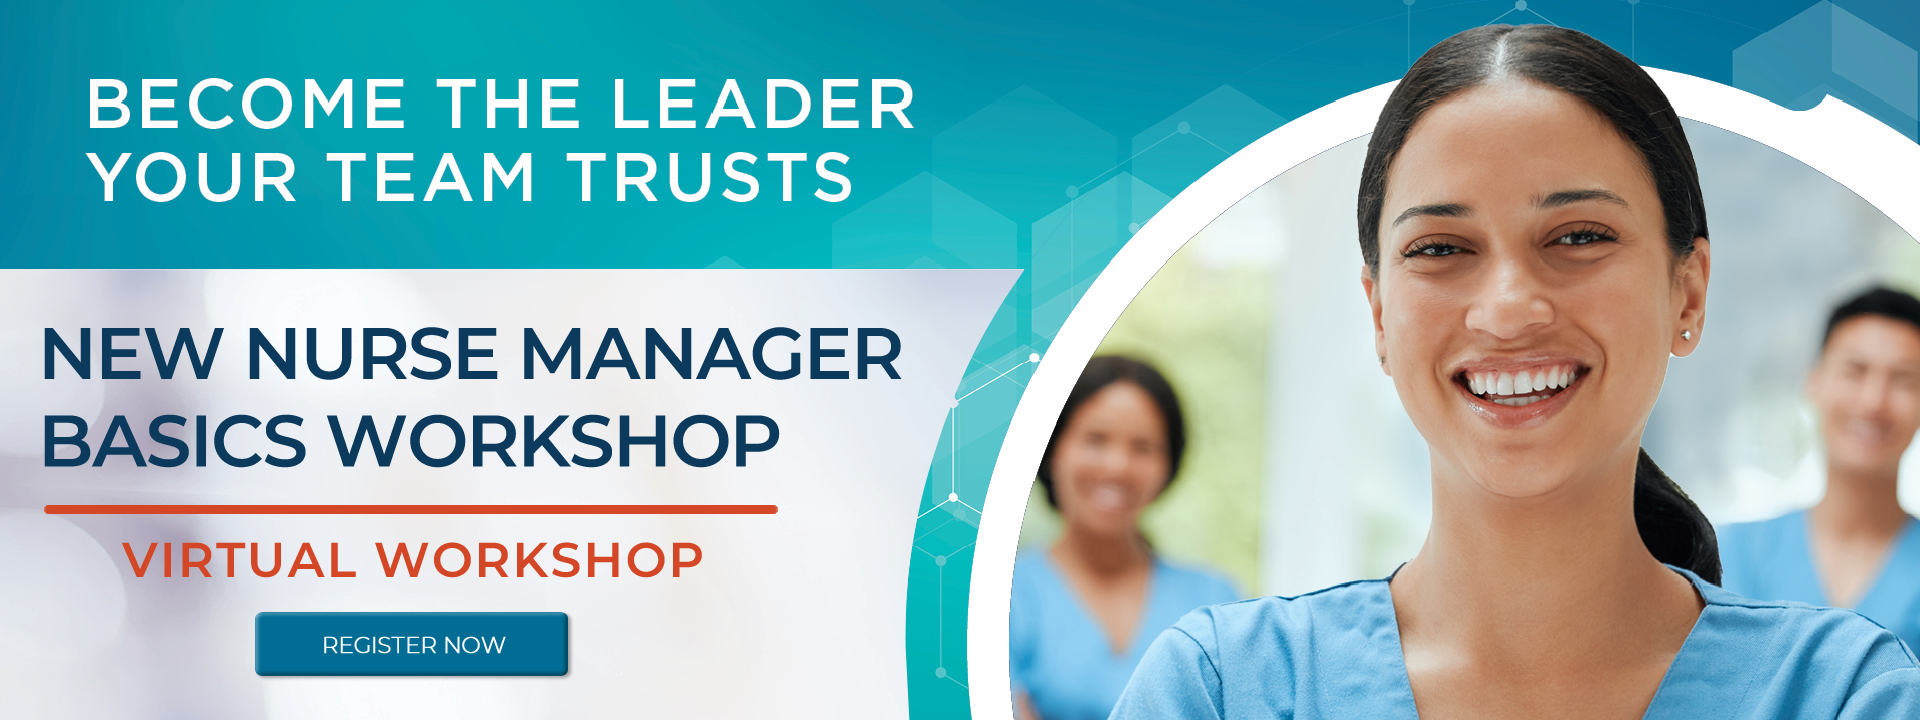 New Nurse Manager Basics Workshop :: Register Now